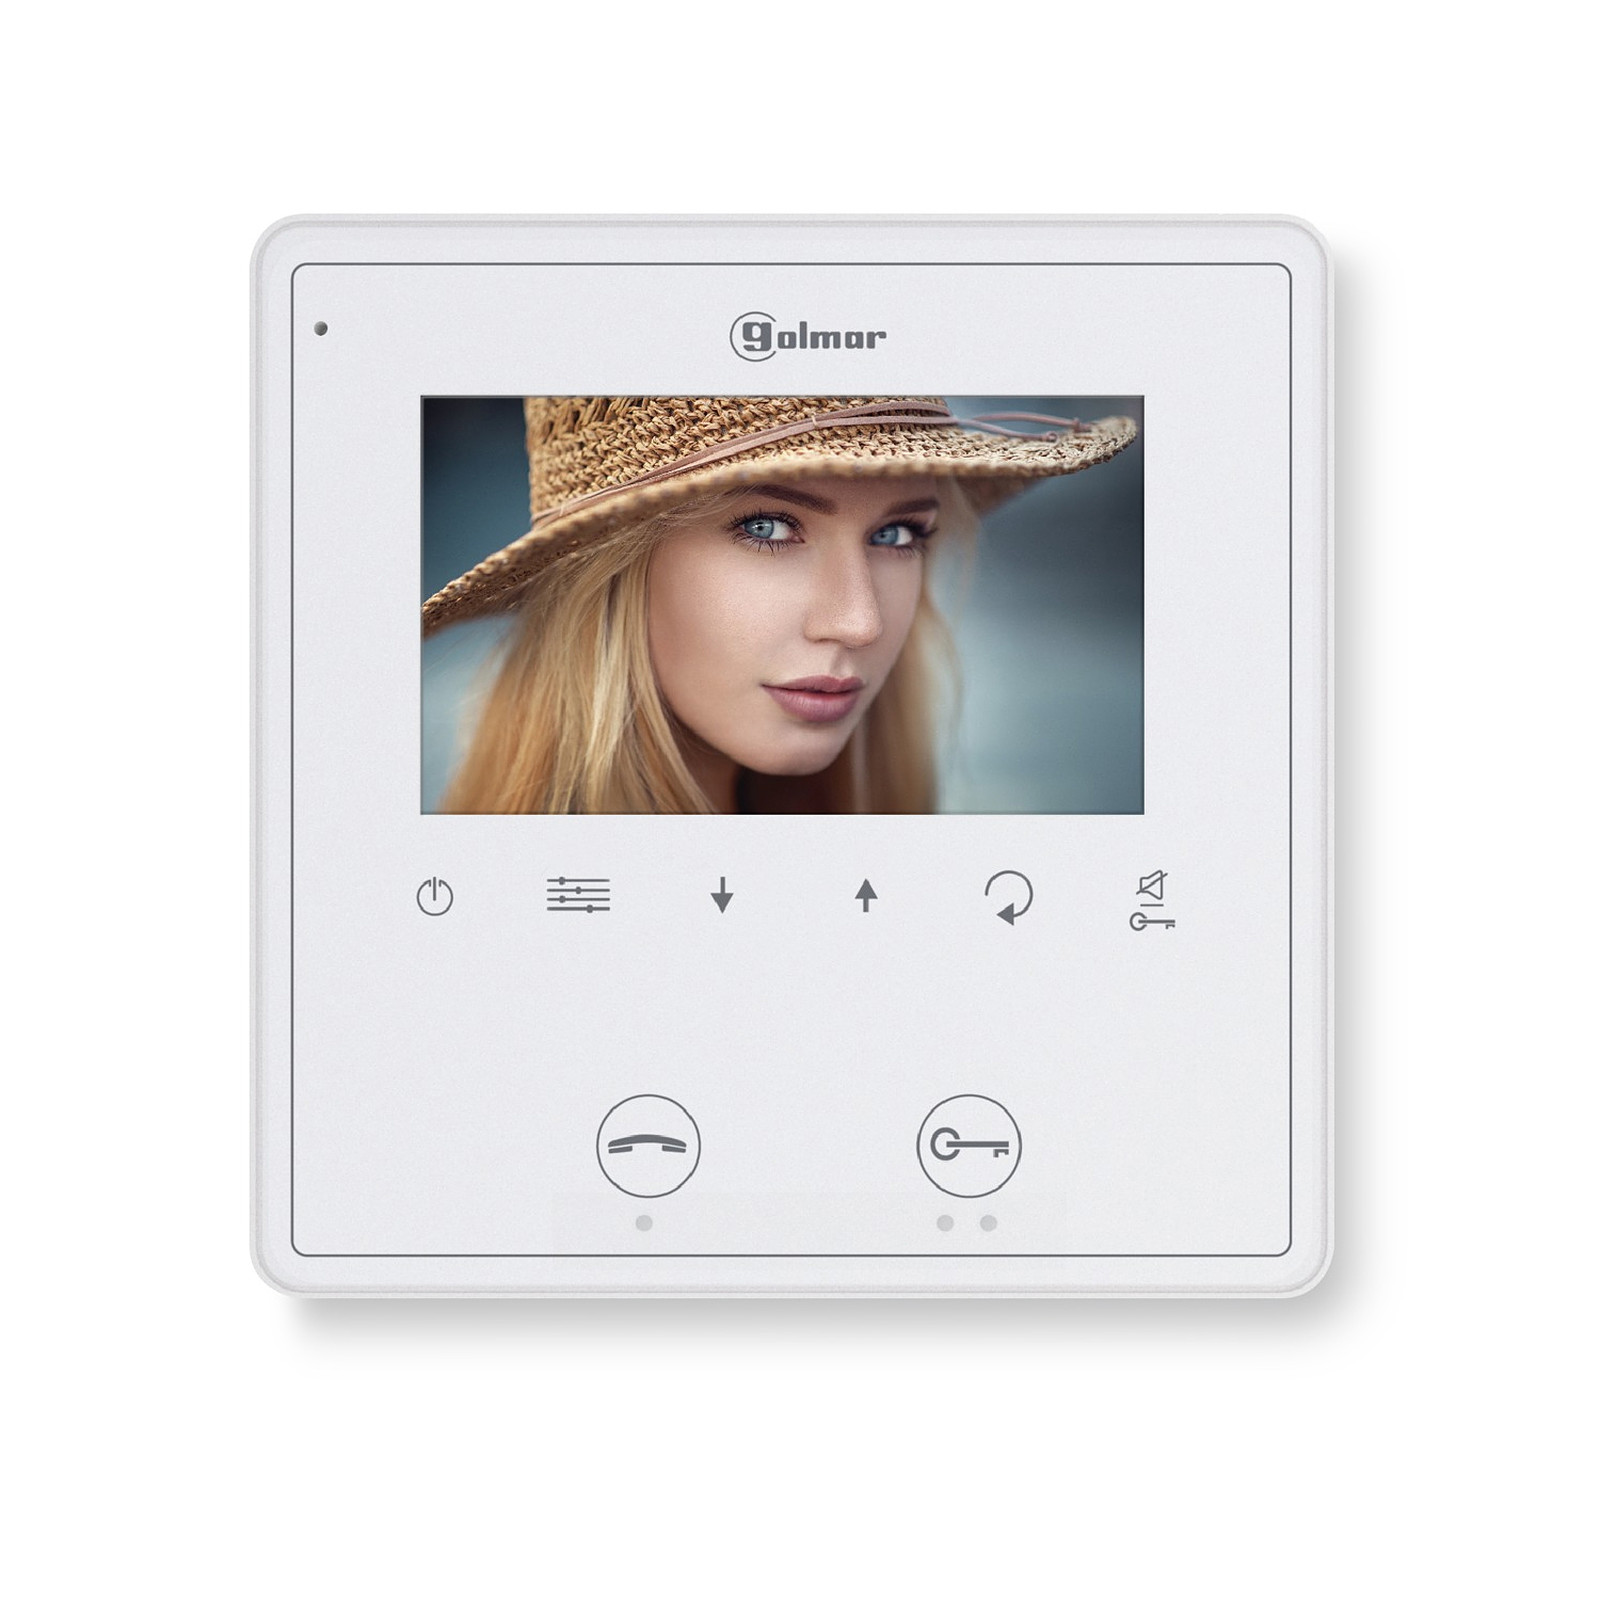 Moniteur video couleur mains libres Vesta 2 - Golmar - Interphone connecte Golmar